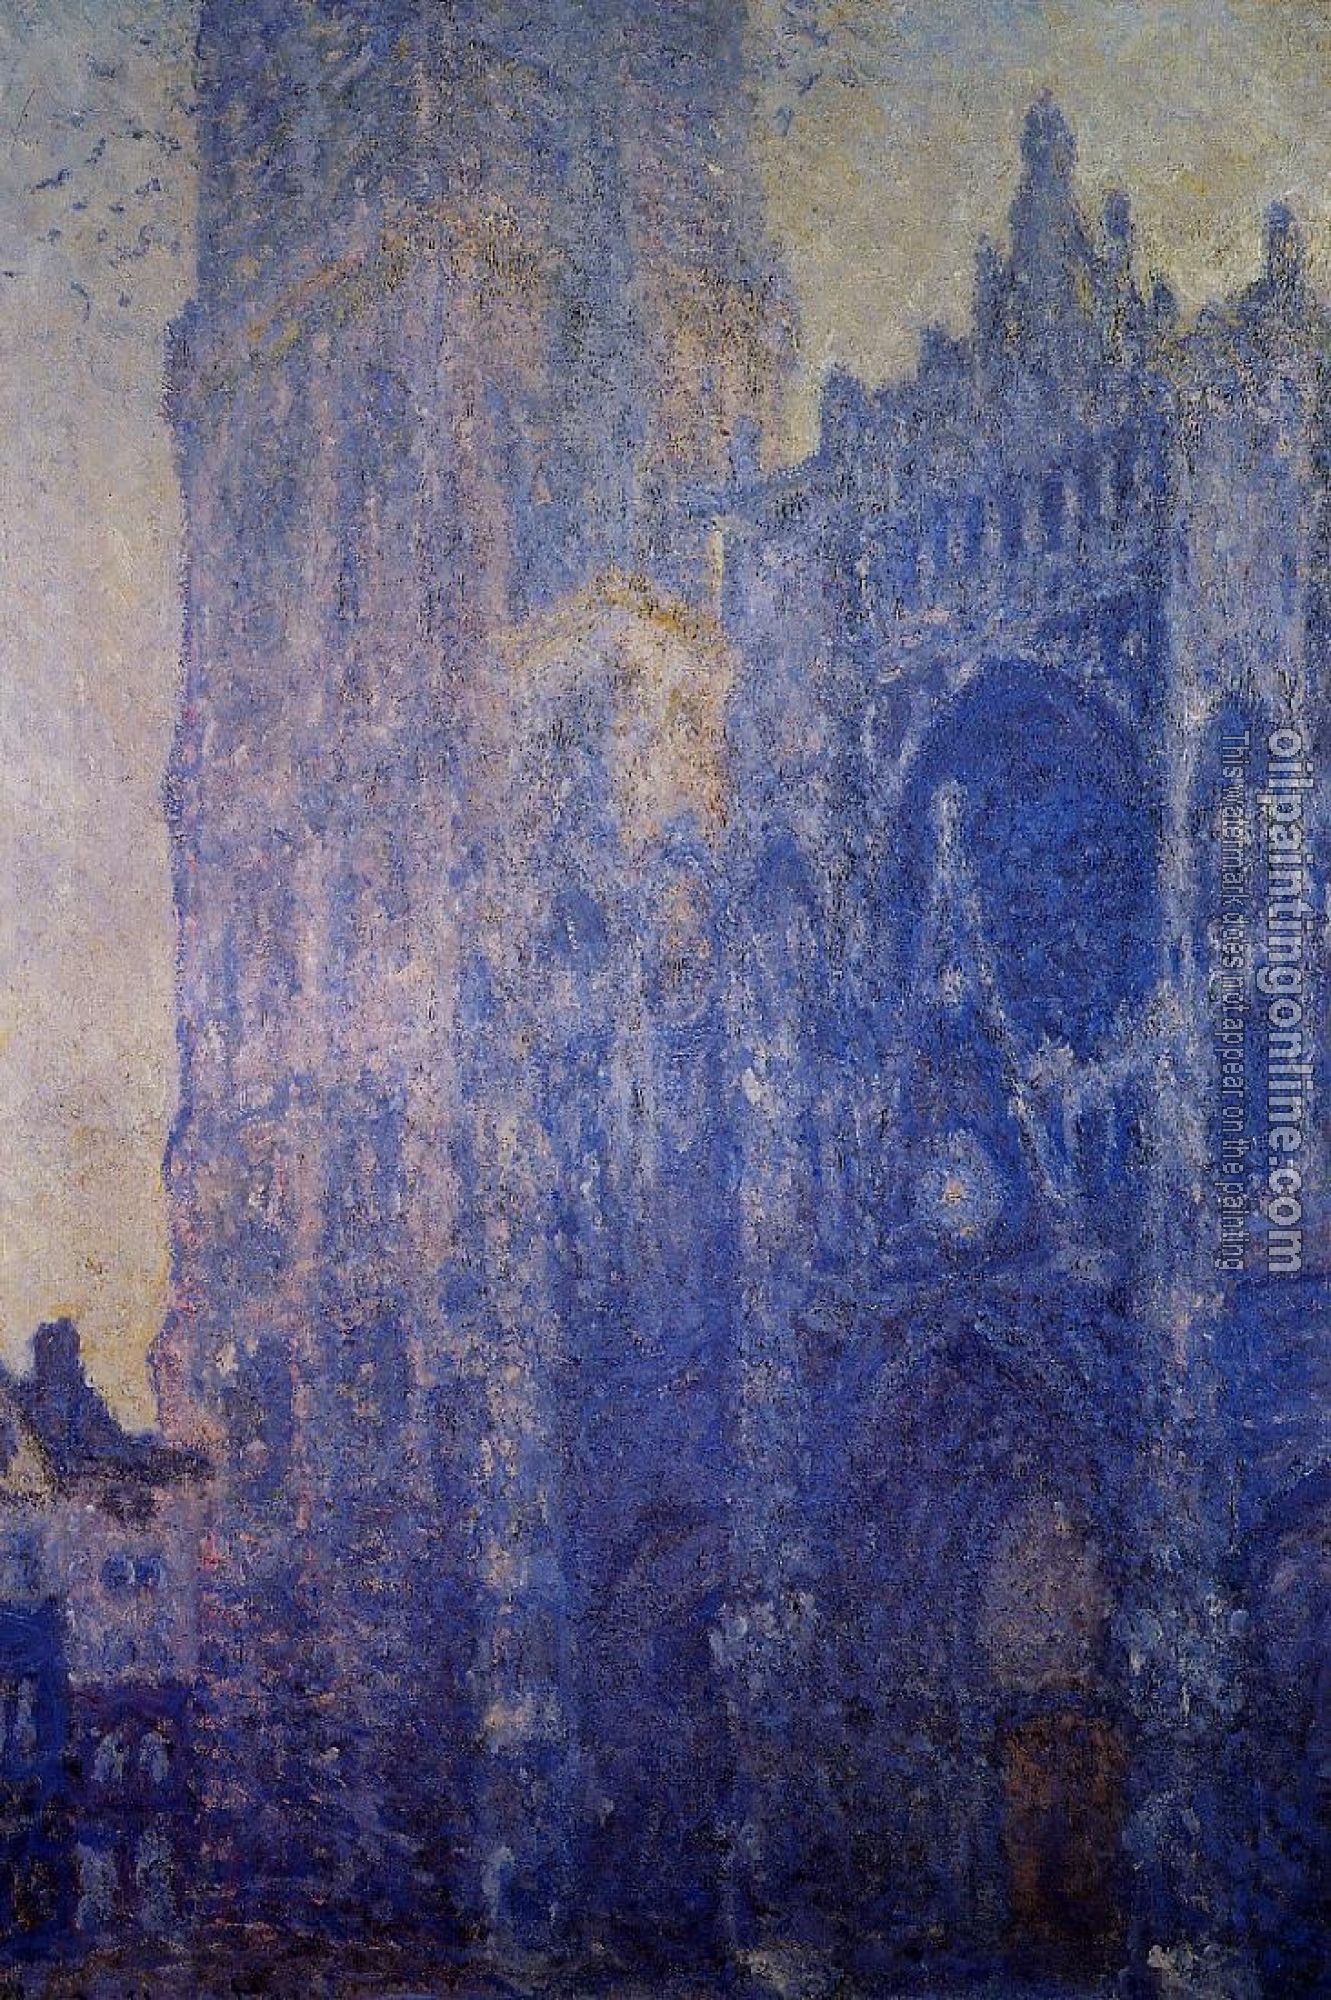 Monet, Claude Oscar - Rouen Cathedral, Morning Effect